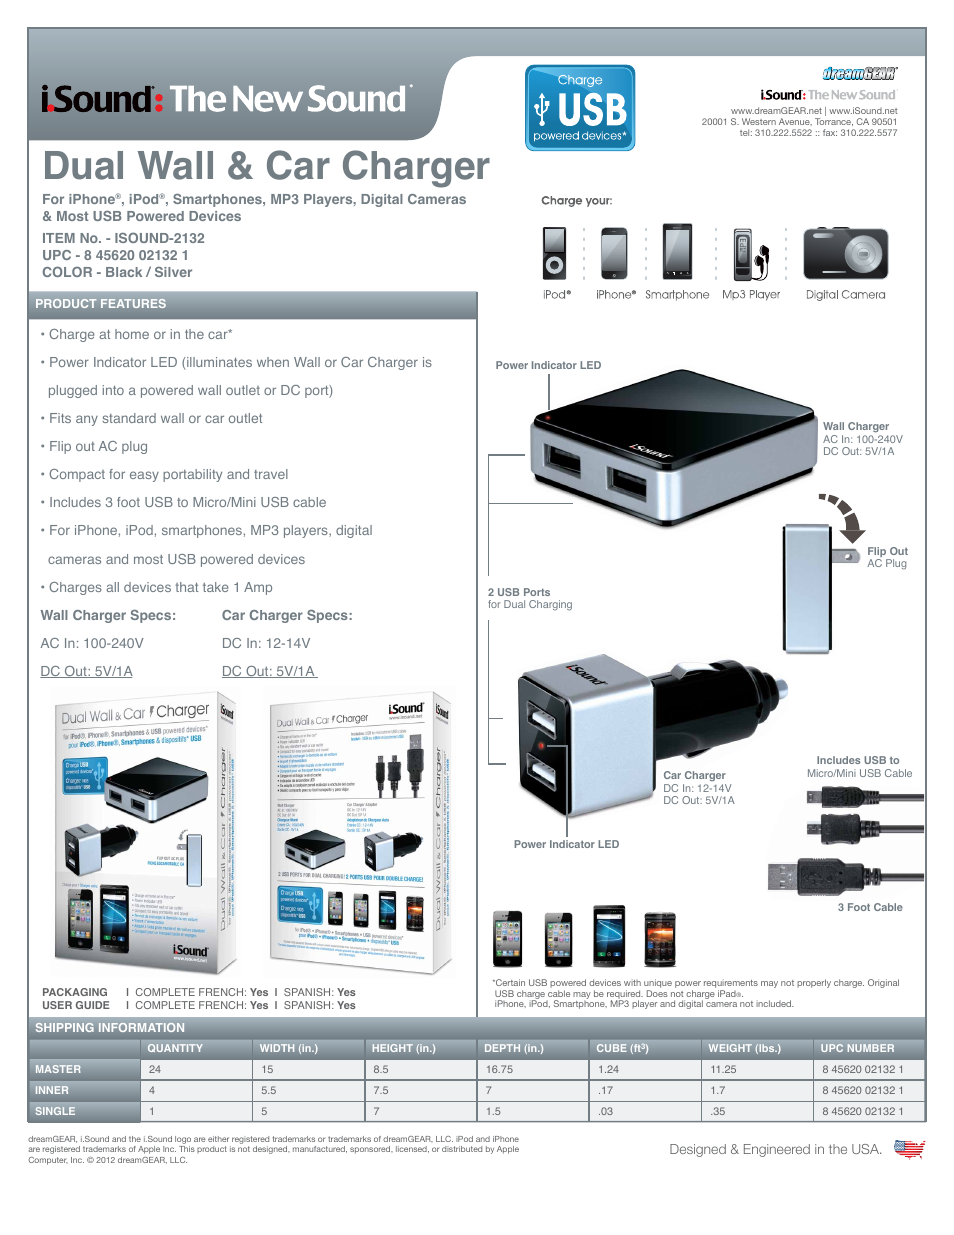 Dual USB Wall & Car Charger 2132 - Sell Sheet